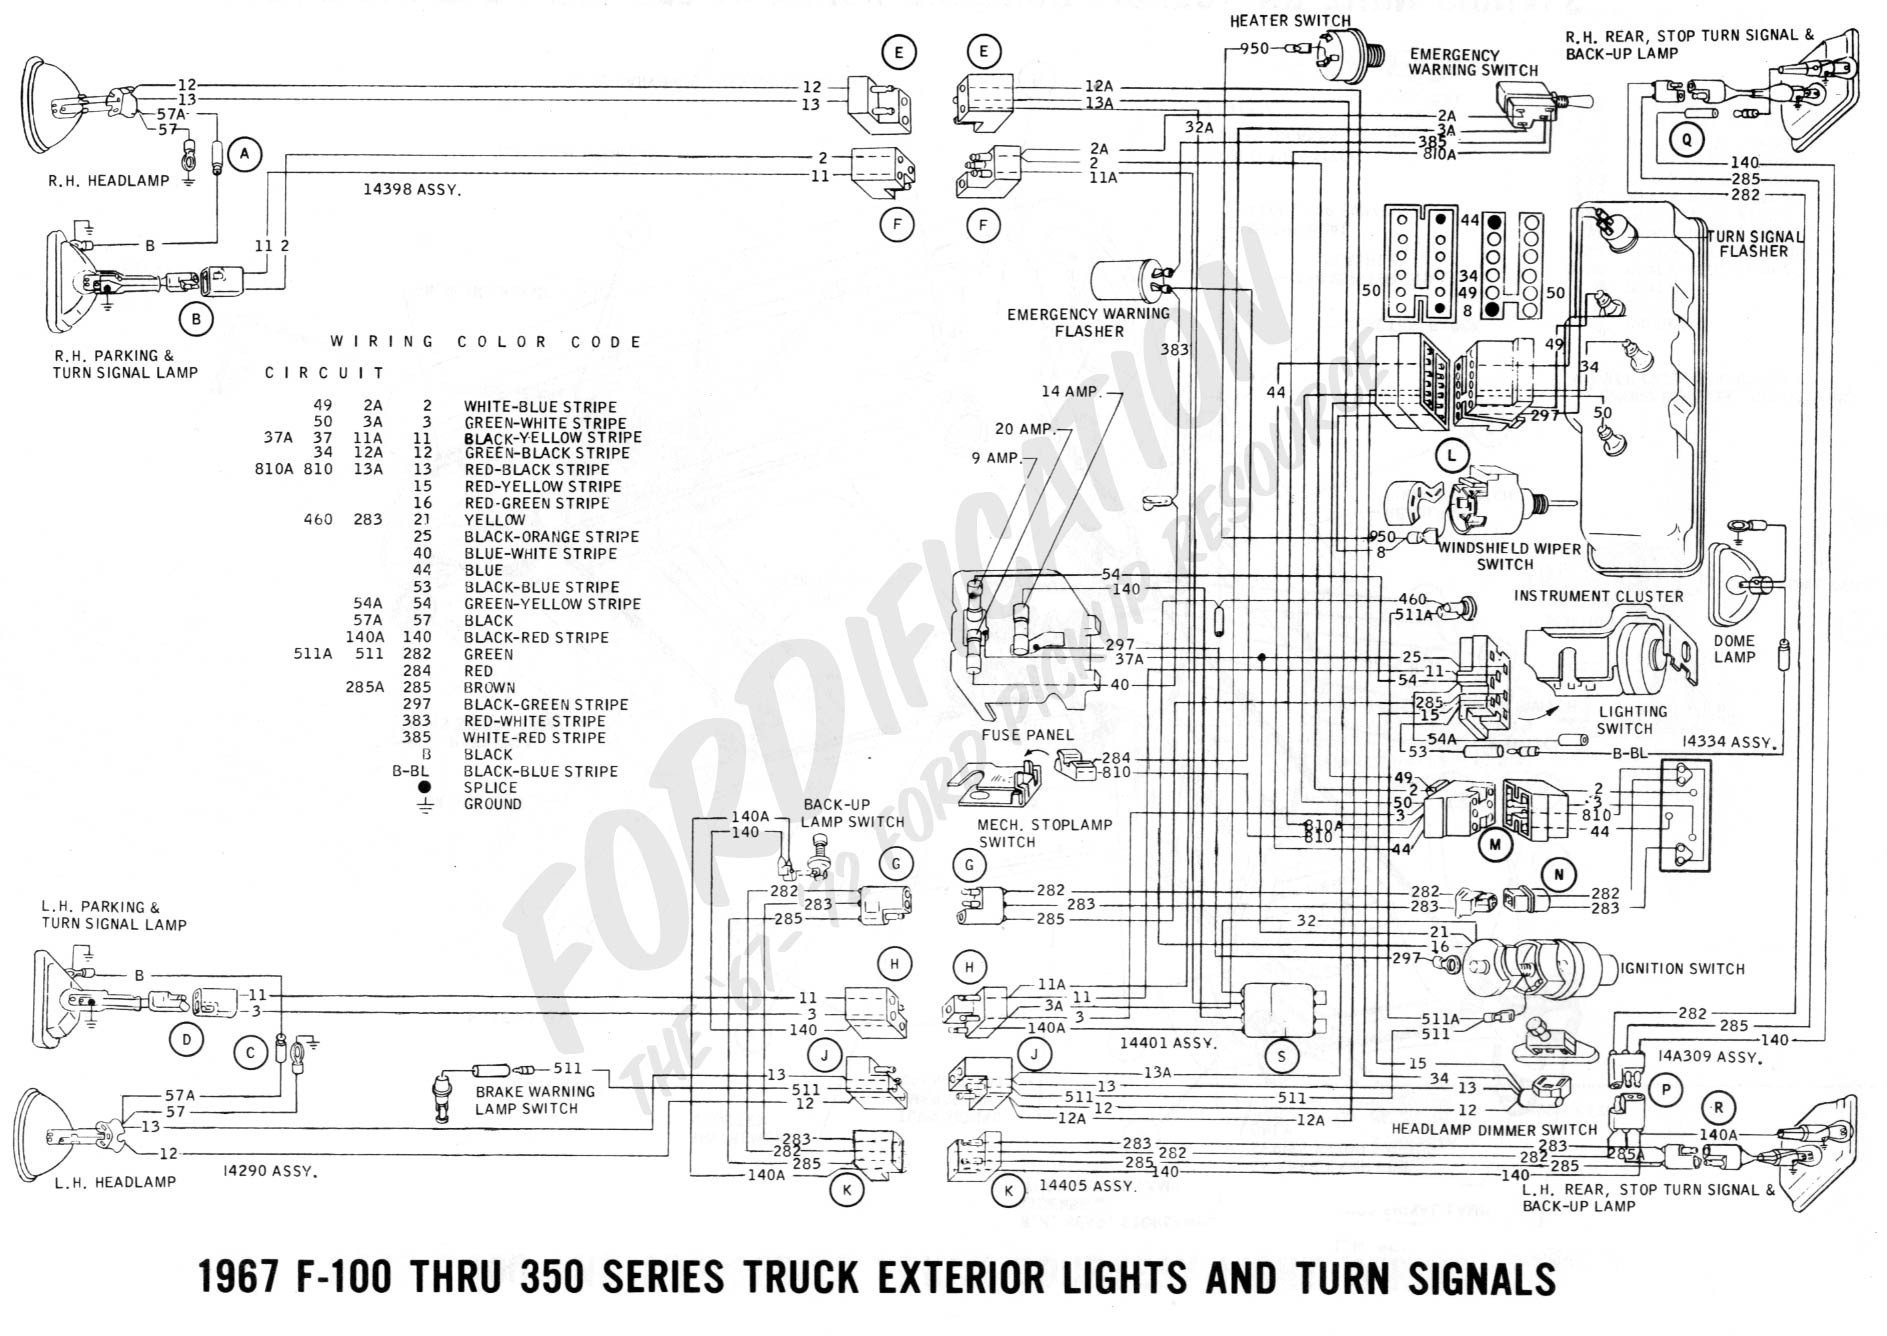 Ford F350 Wiring Diagram Free Fresh 1988 ford F100 Turn Signal Wiring Wiring Diagrams Schematics